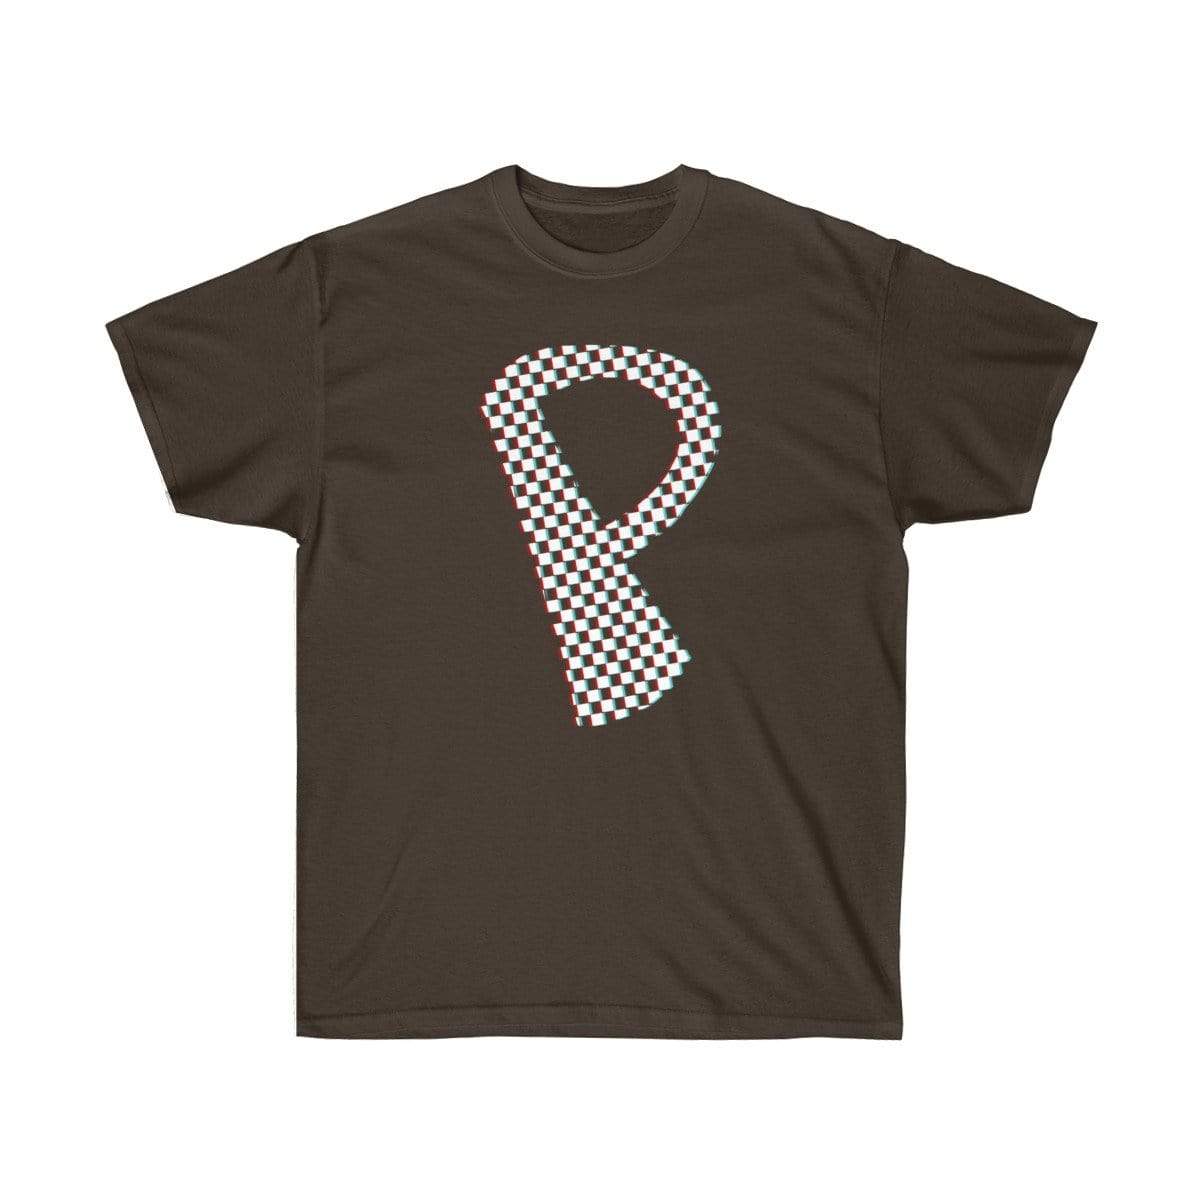 Plumskum T-Shirt Dark Chocolate / S Checkered, Glitchy, Capital P T-Shirt